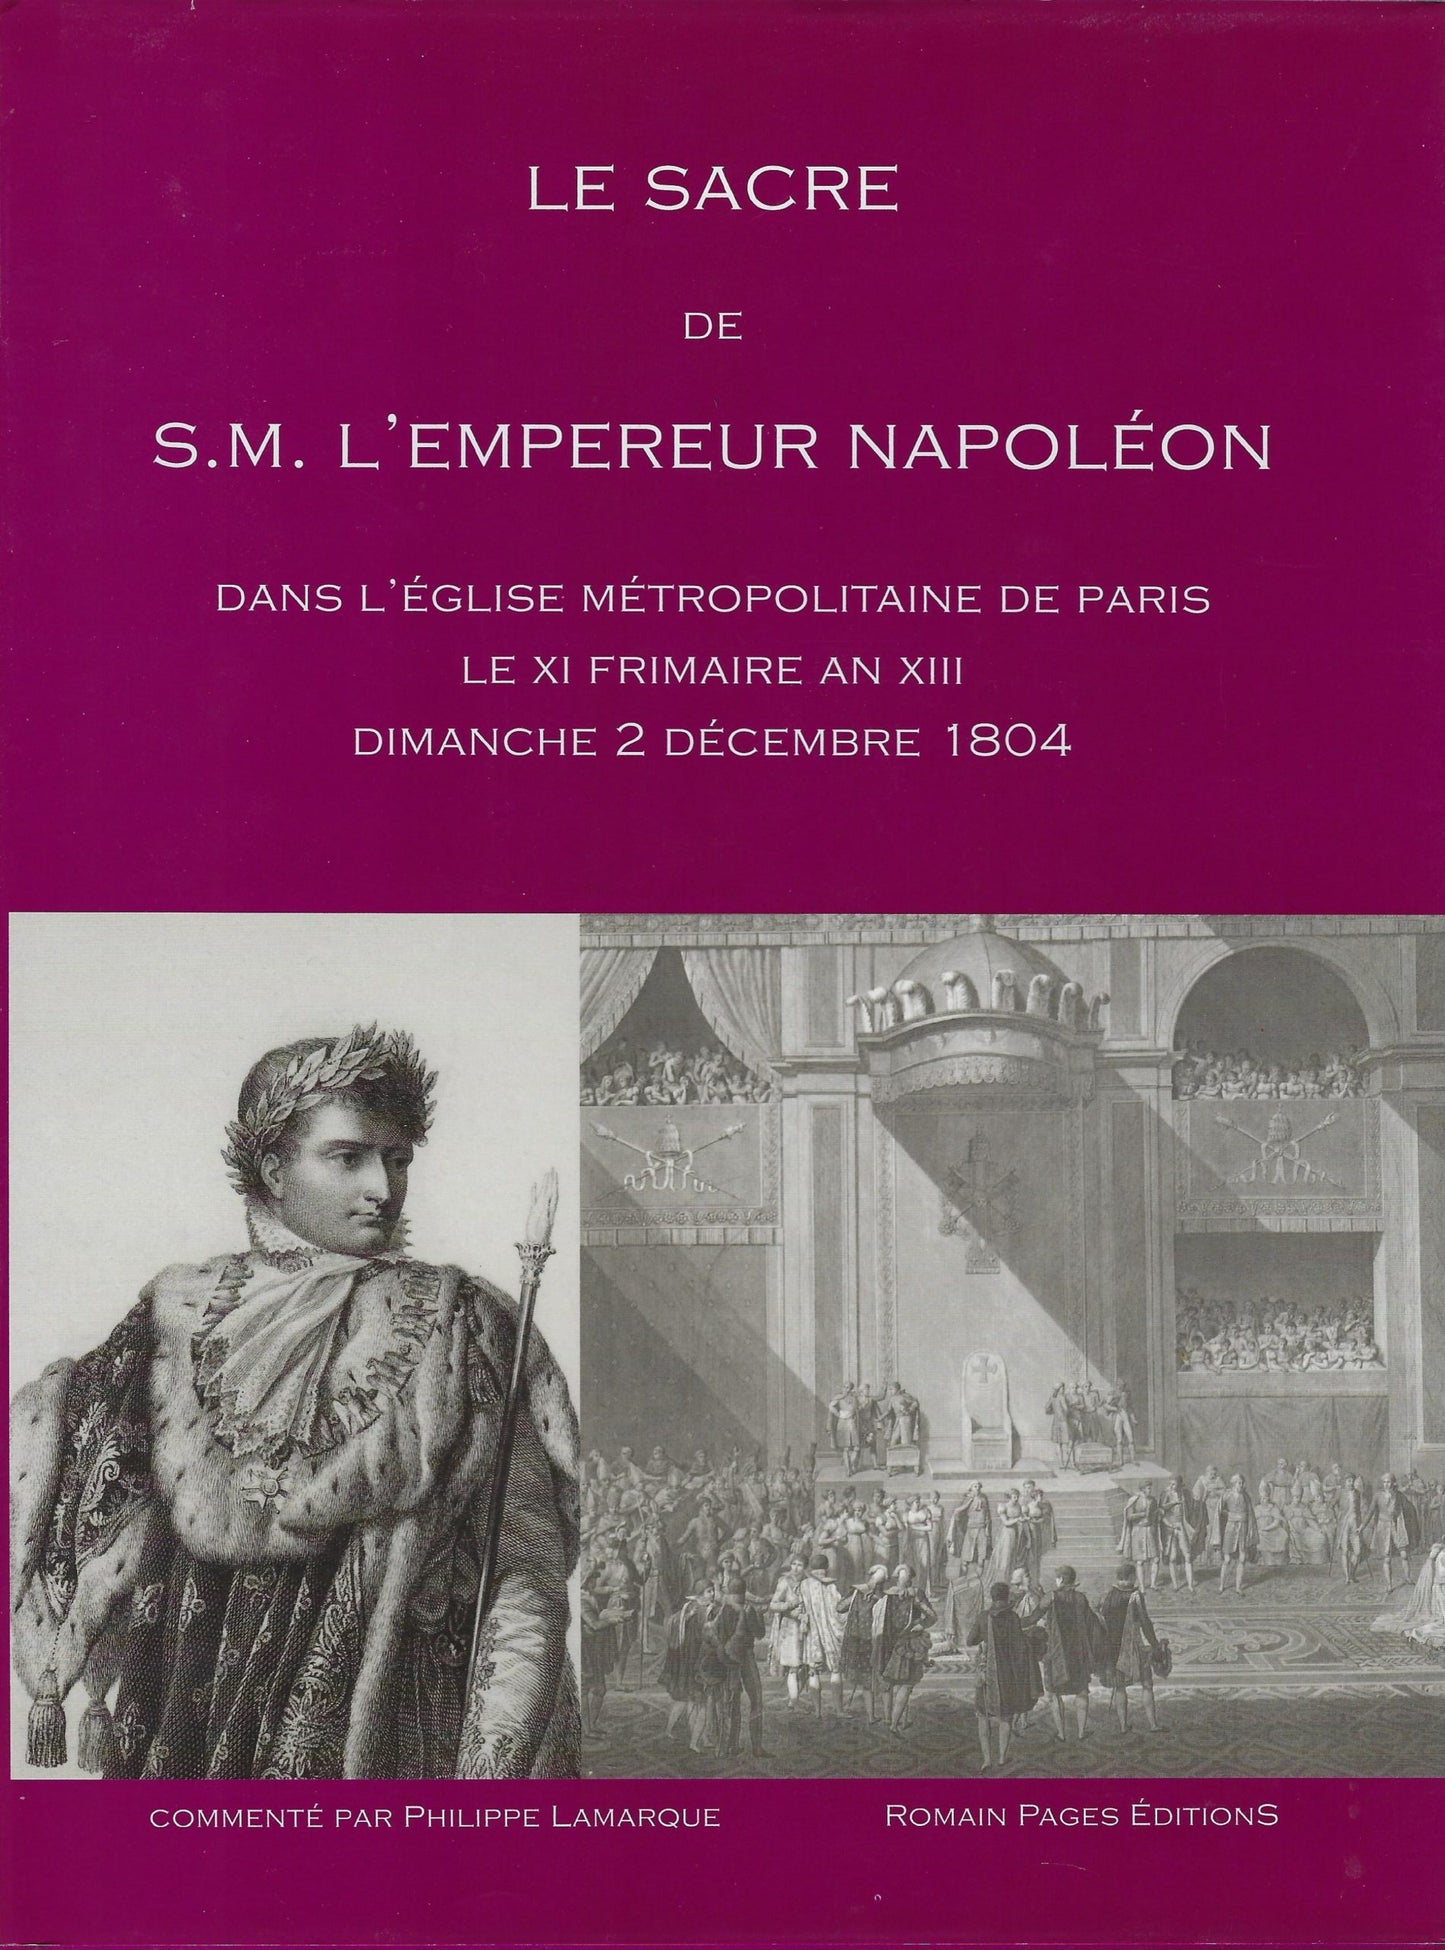 Le Sacre de S.M. L'Empereur Napoléon